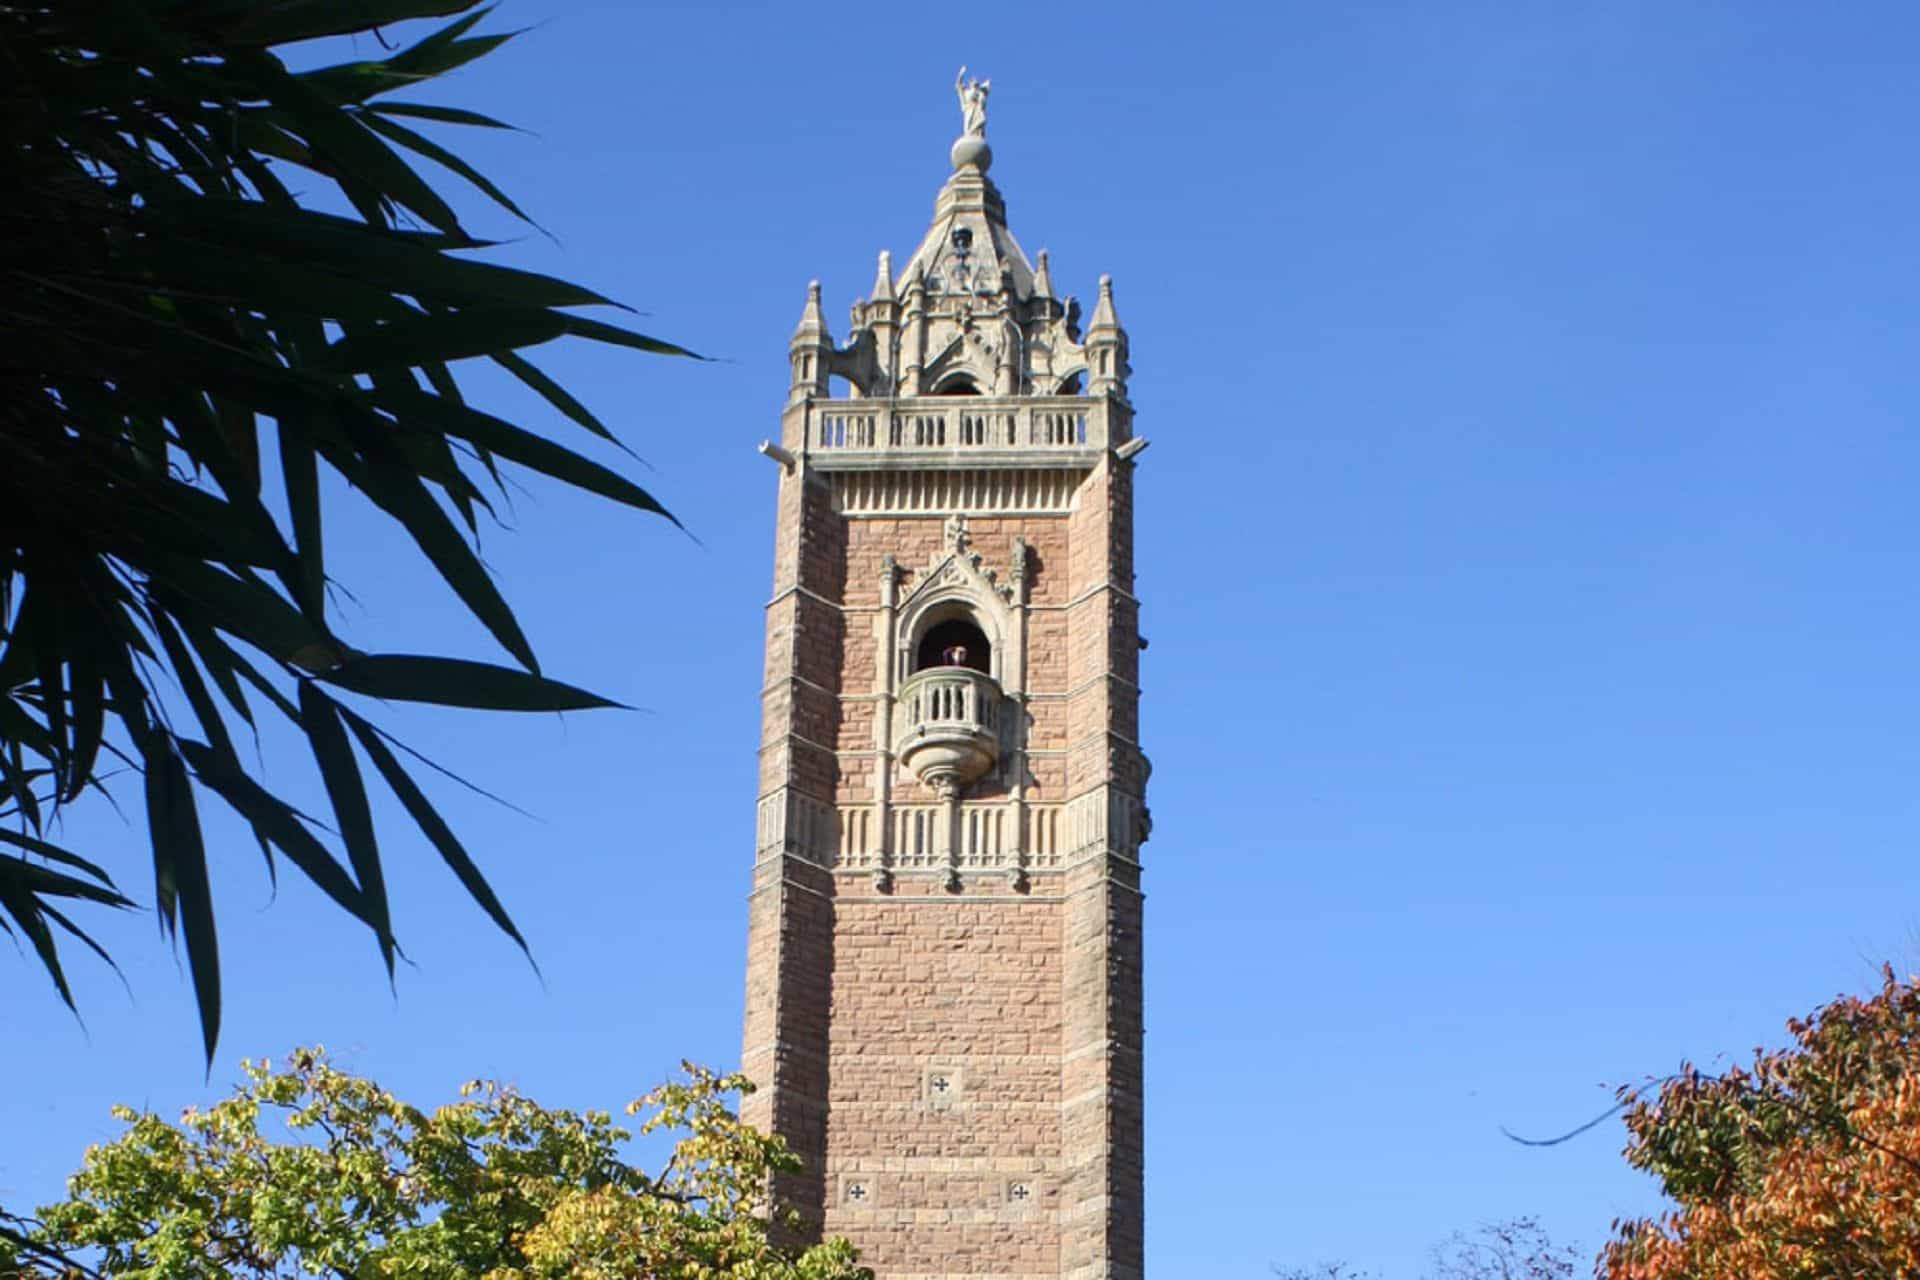 Clock Tower in UK